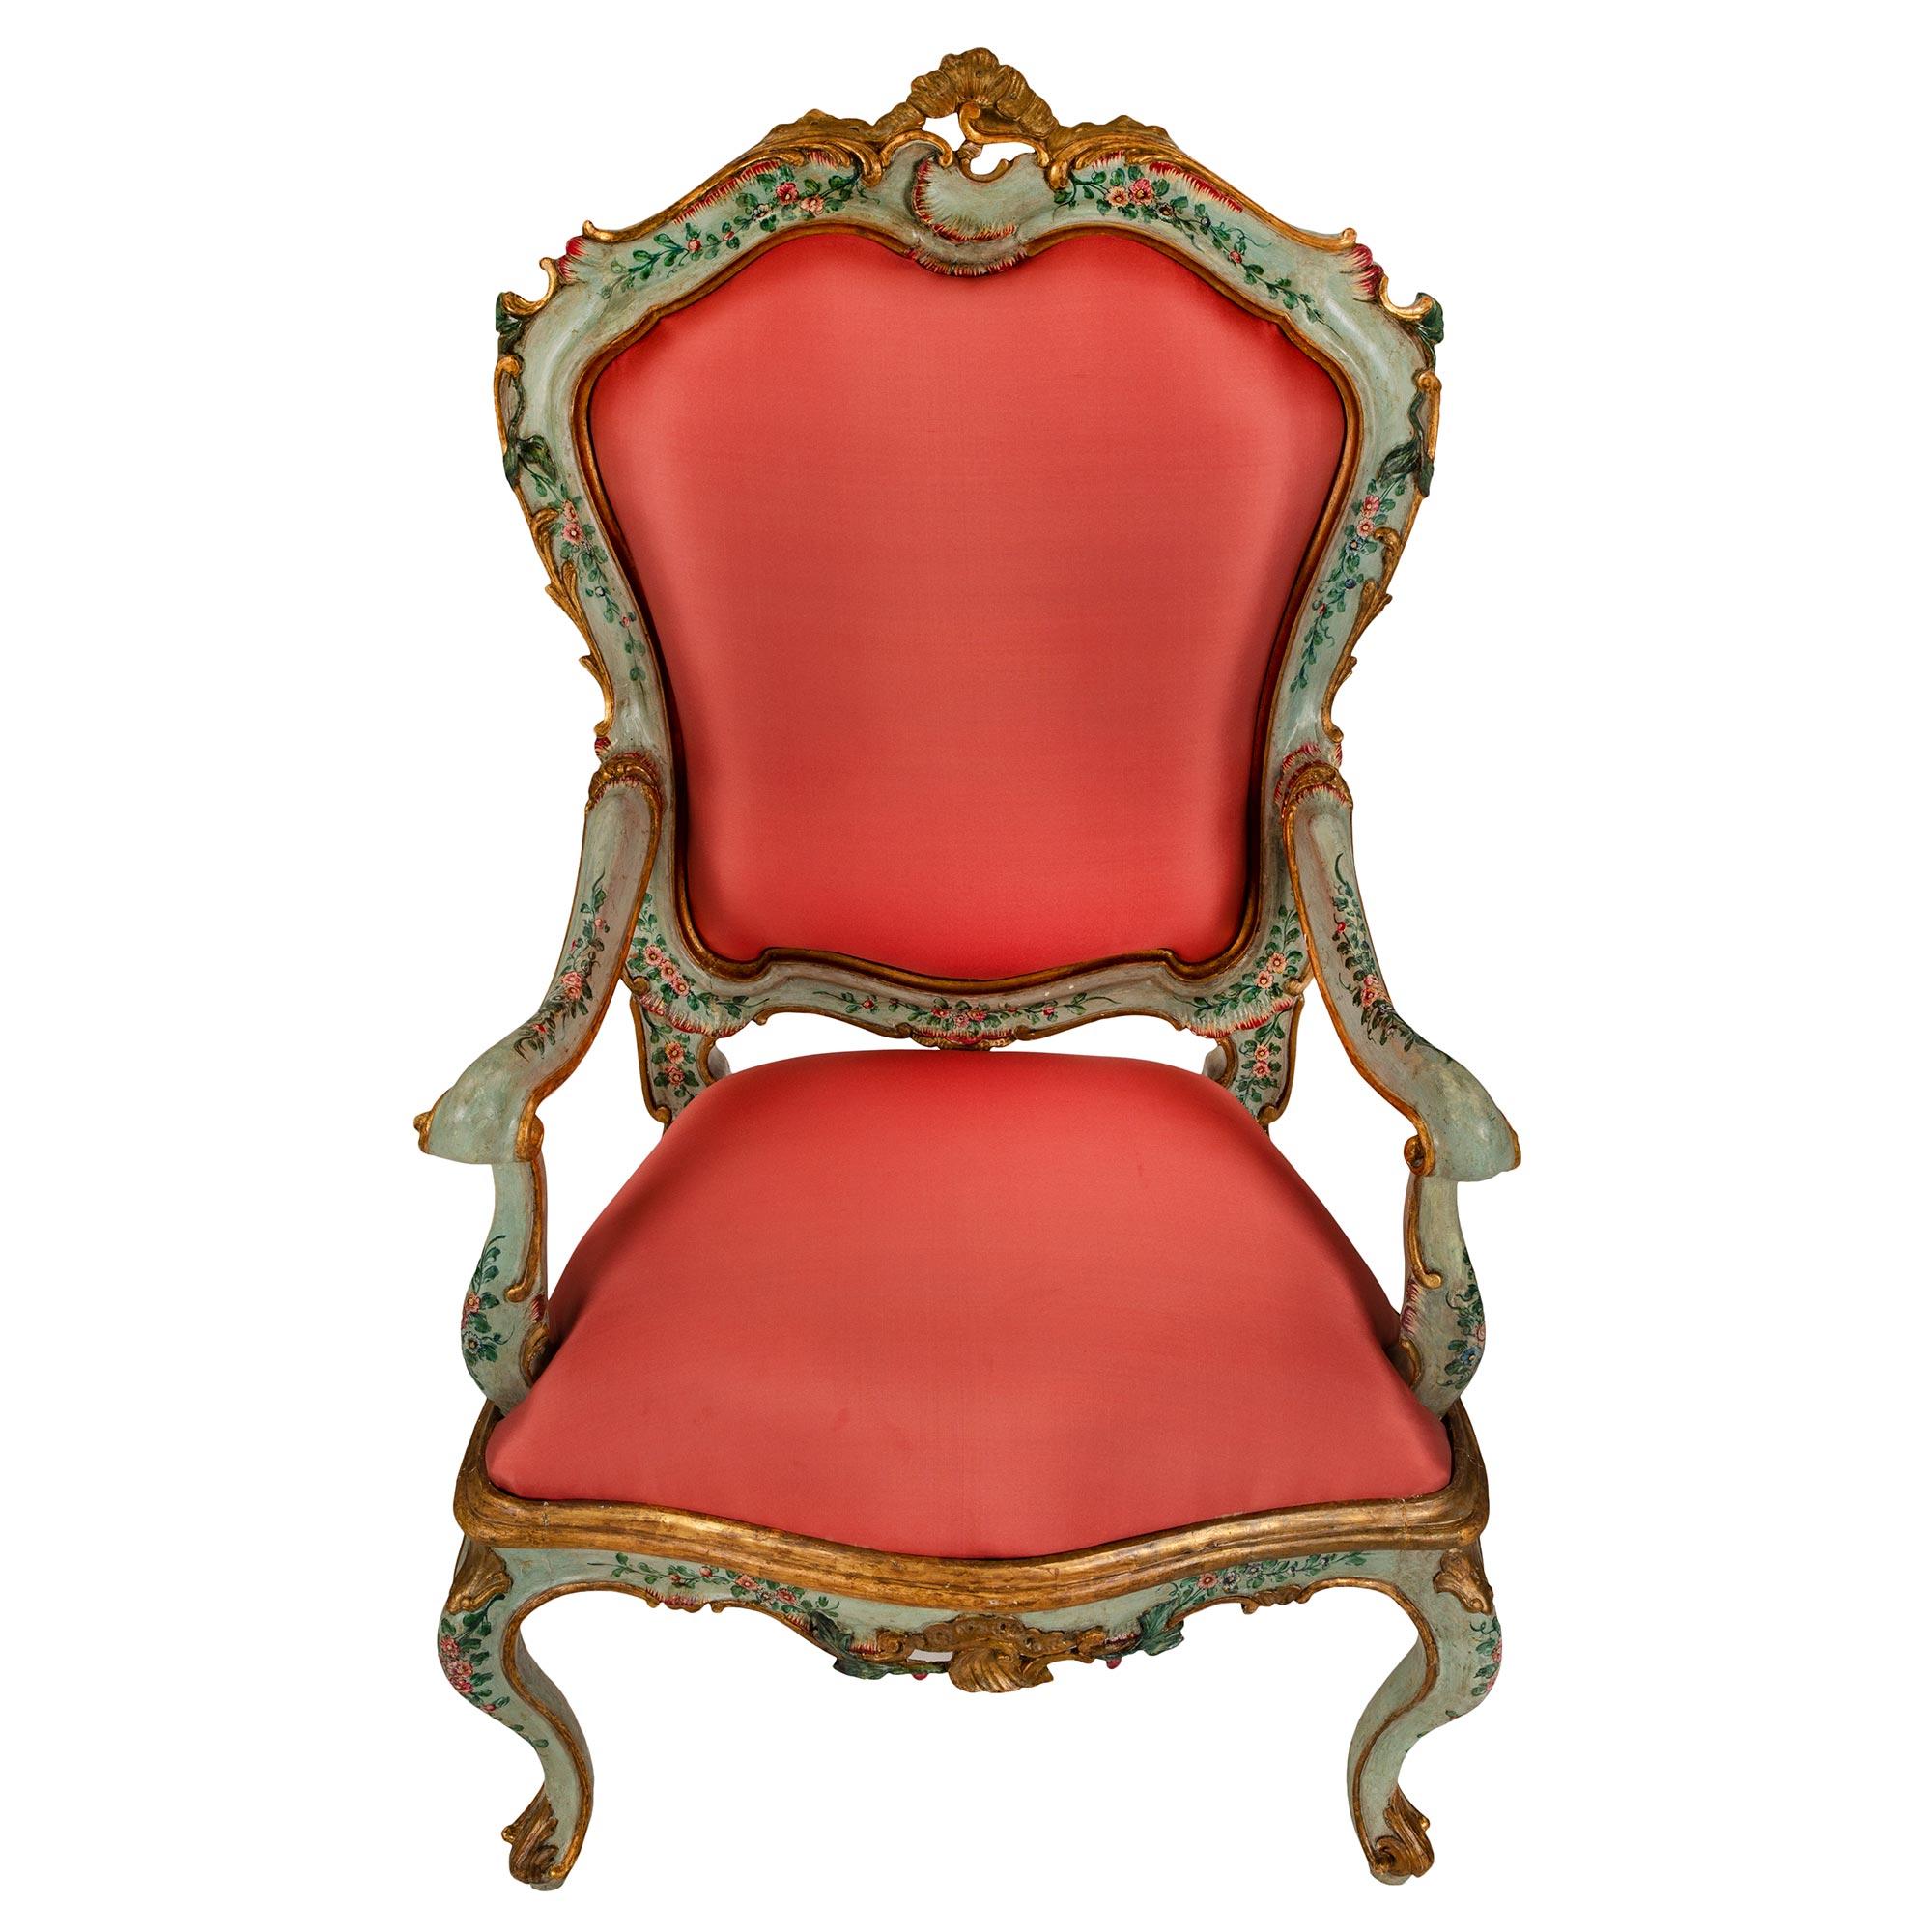 Une paire sensationnelle de fauteuils italiens du 18ème siècle en patine vénitienne et en Mecque. Chaque fauteuil est surélevé par de magnifiques pieds cabriole avec des pieds à feuilles d'acanthe en volute et des fleurs détaillées finement peintes